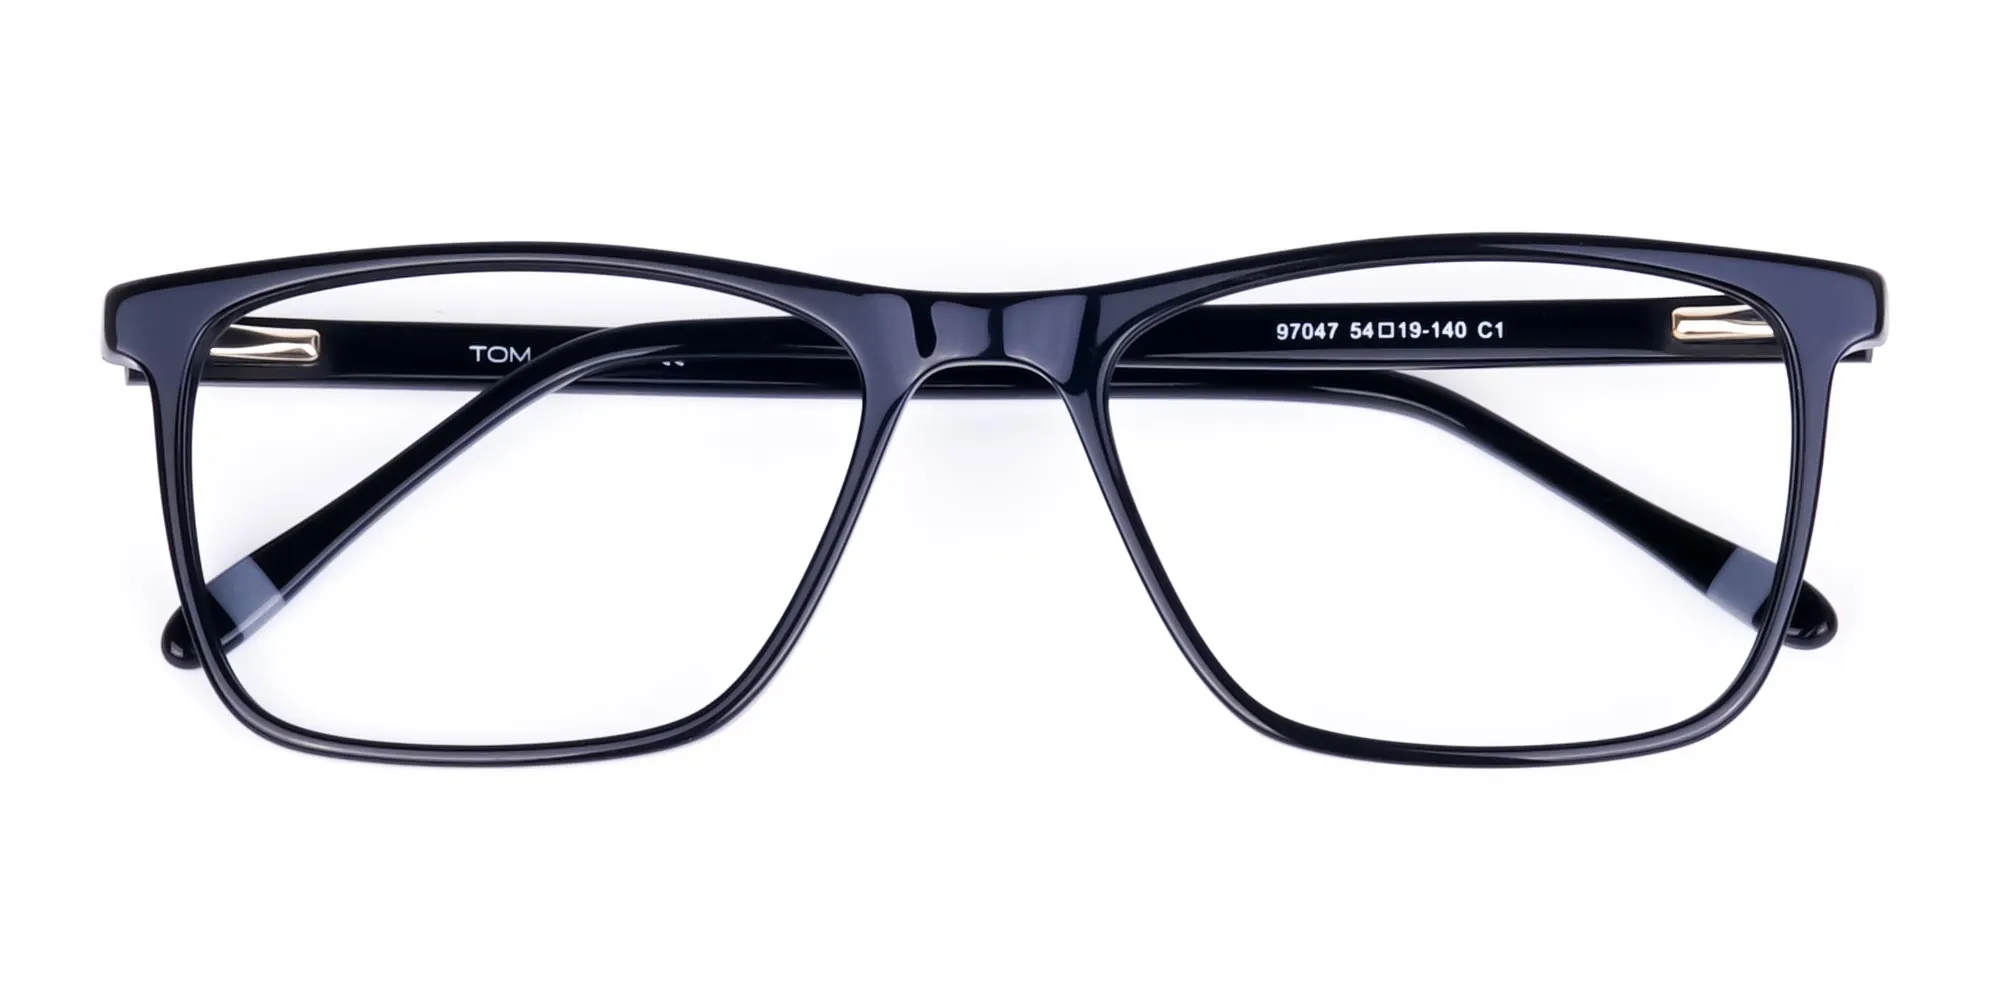 Black-Full-Rimmed-Rectangular-Glasses-2